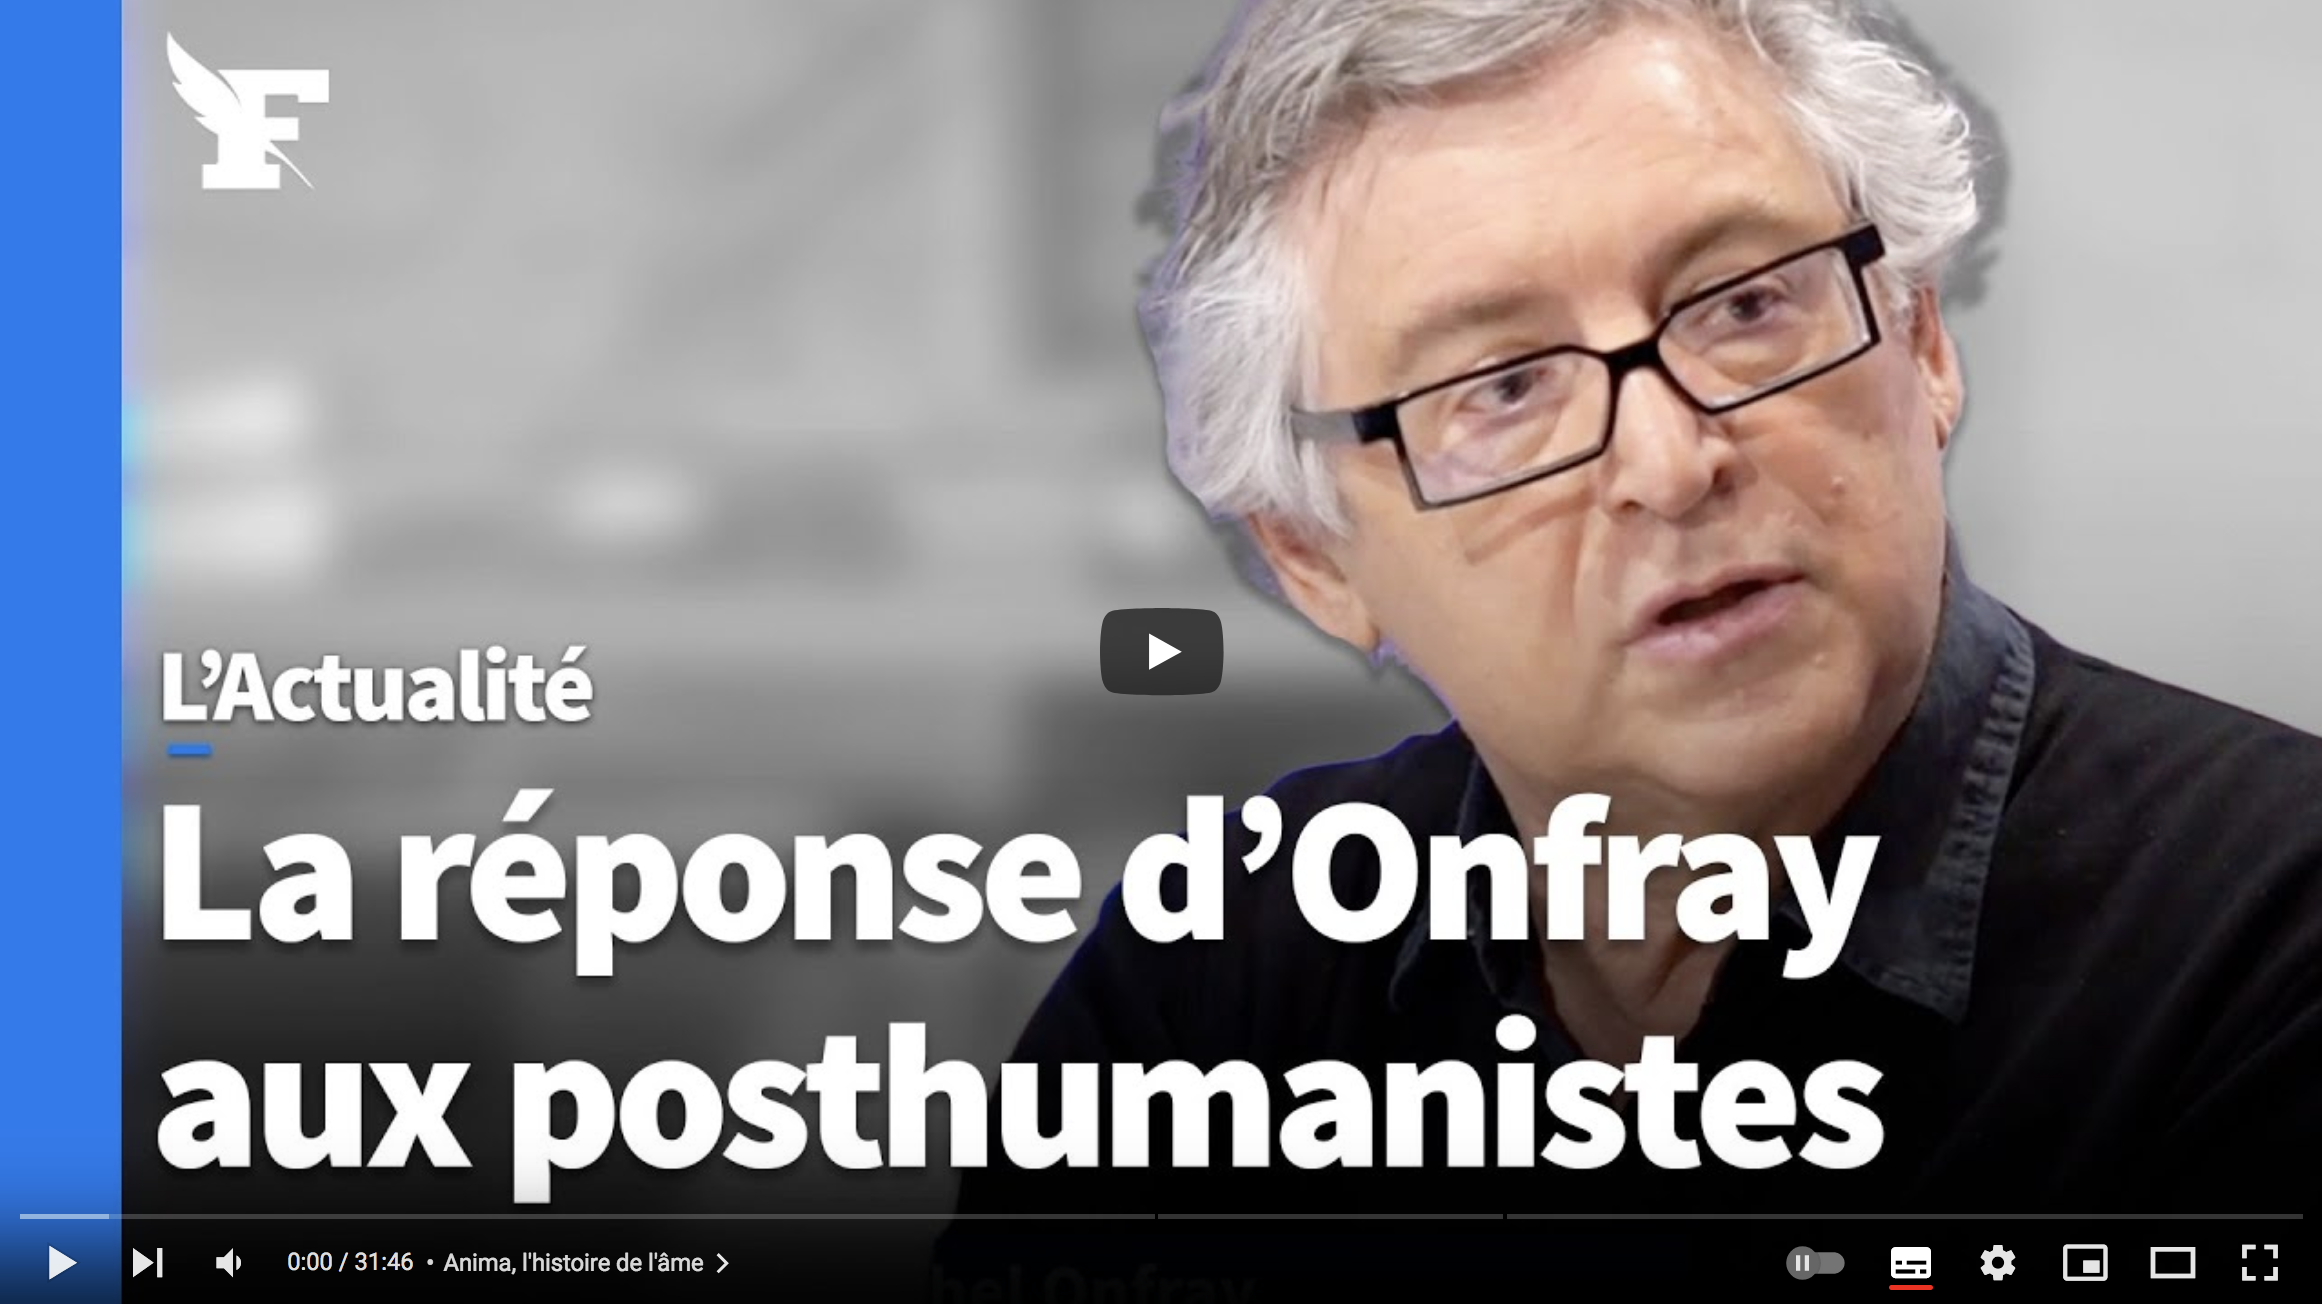 La réponse de Michel Onfray aux posthumanismes (VIDÉO)